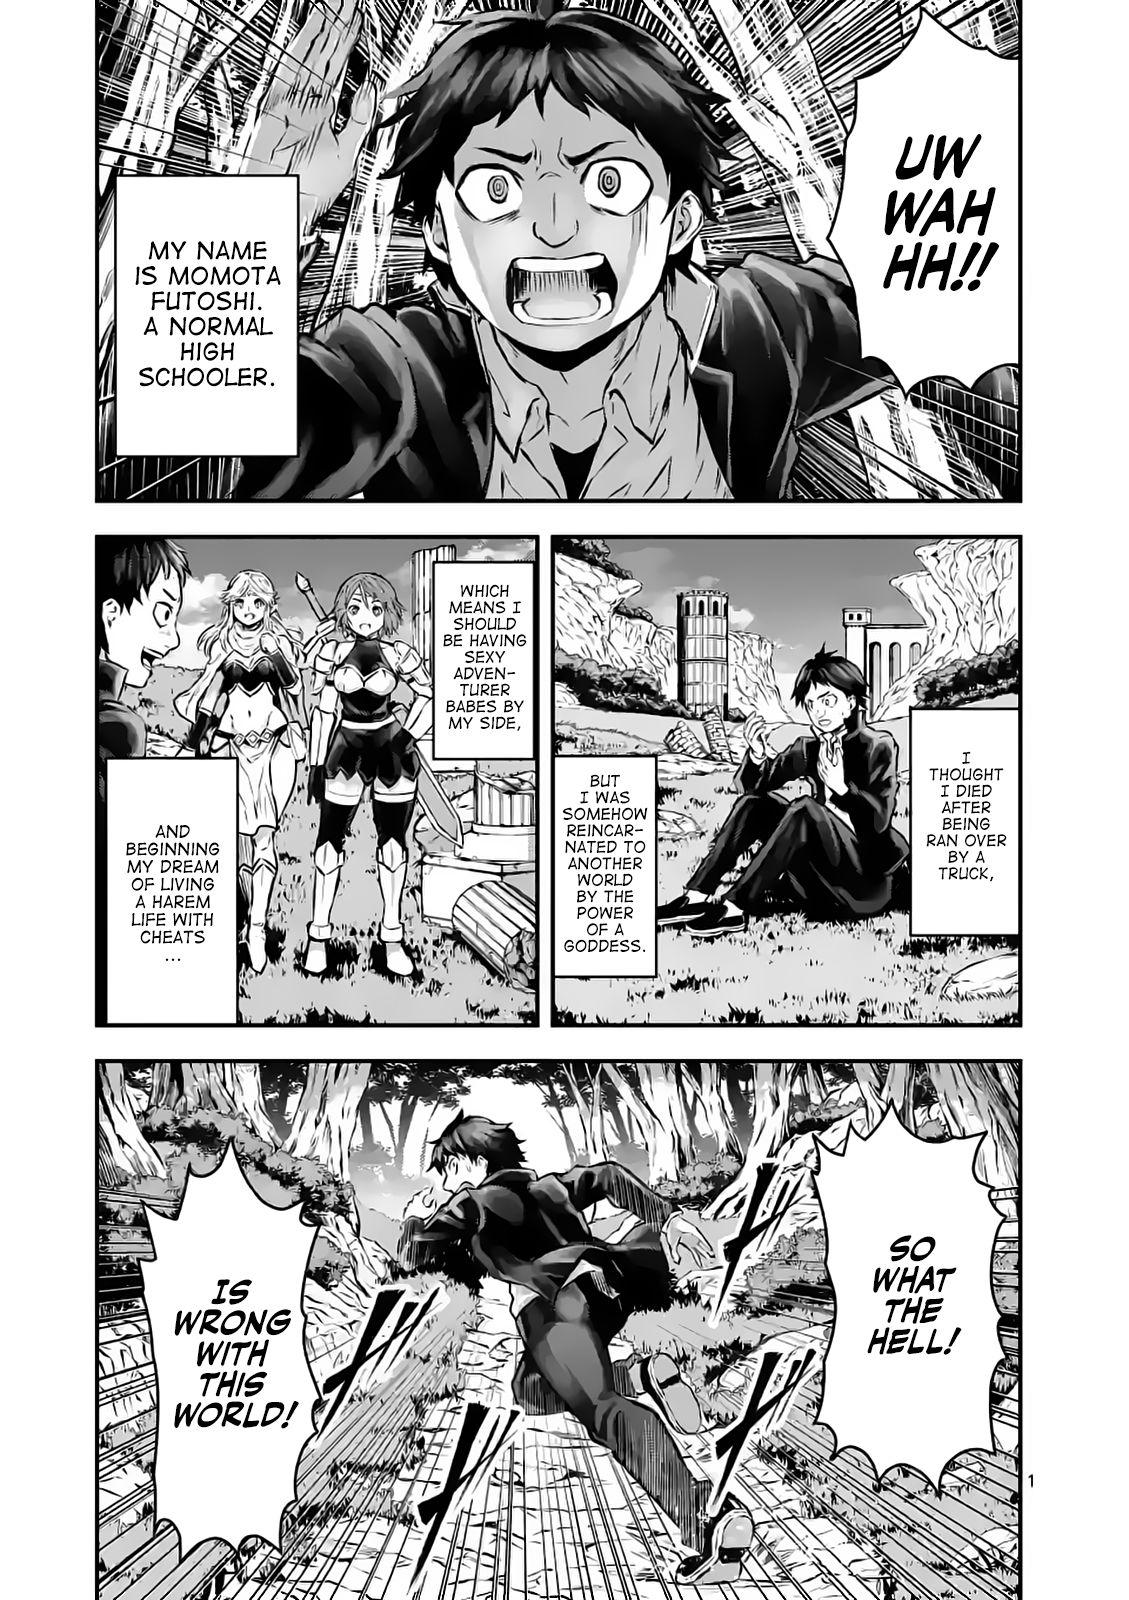 Yuusha ga Shinda! - Kami no Kuni-hen Ch.1 Page 12 - Mangago